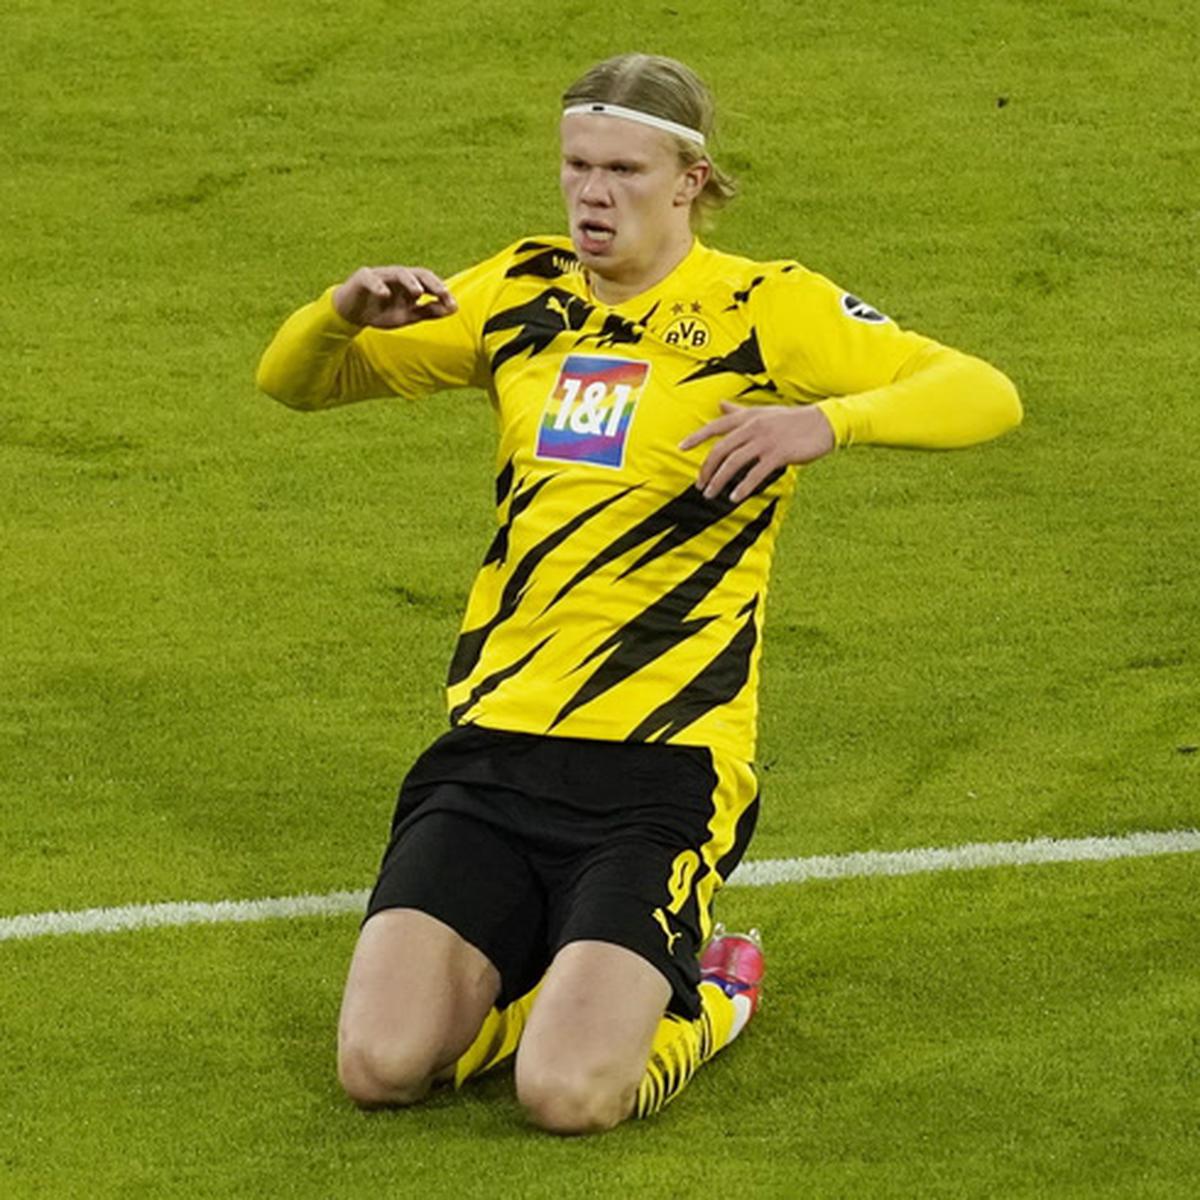 Erling Haaland regala su camiseta a un niño del Dortmund luego de perder  con Bayern Múnich, Video, Curiosidades de fútbol